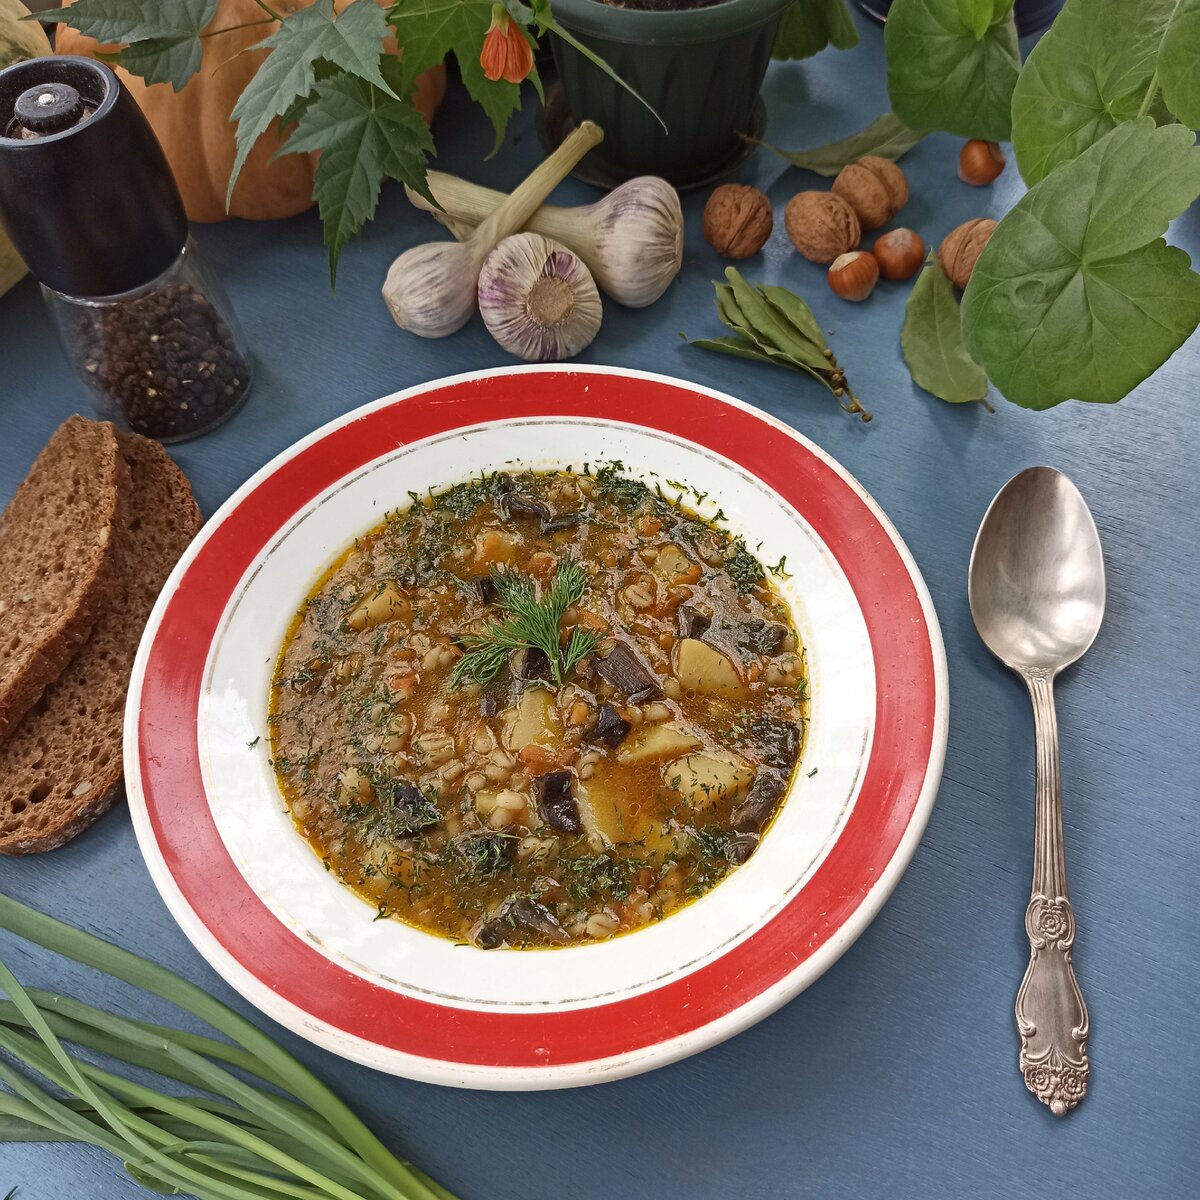 Постное меню: как приготовить ароматный грибной суп по традиционному рецепту